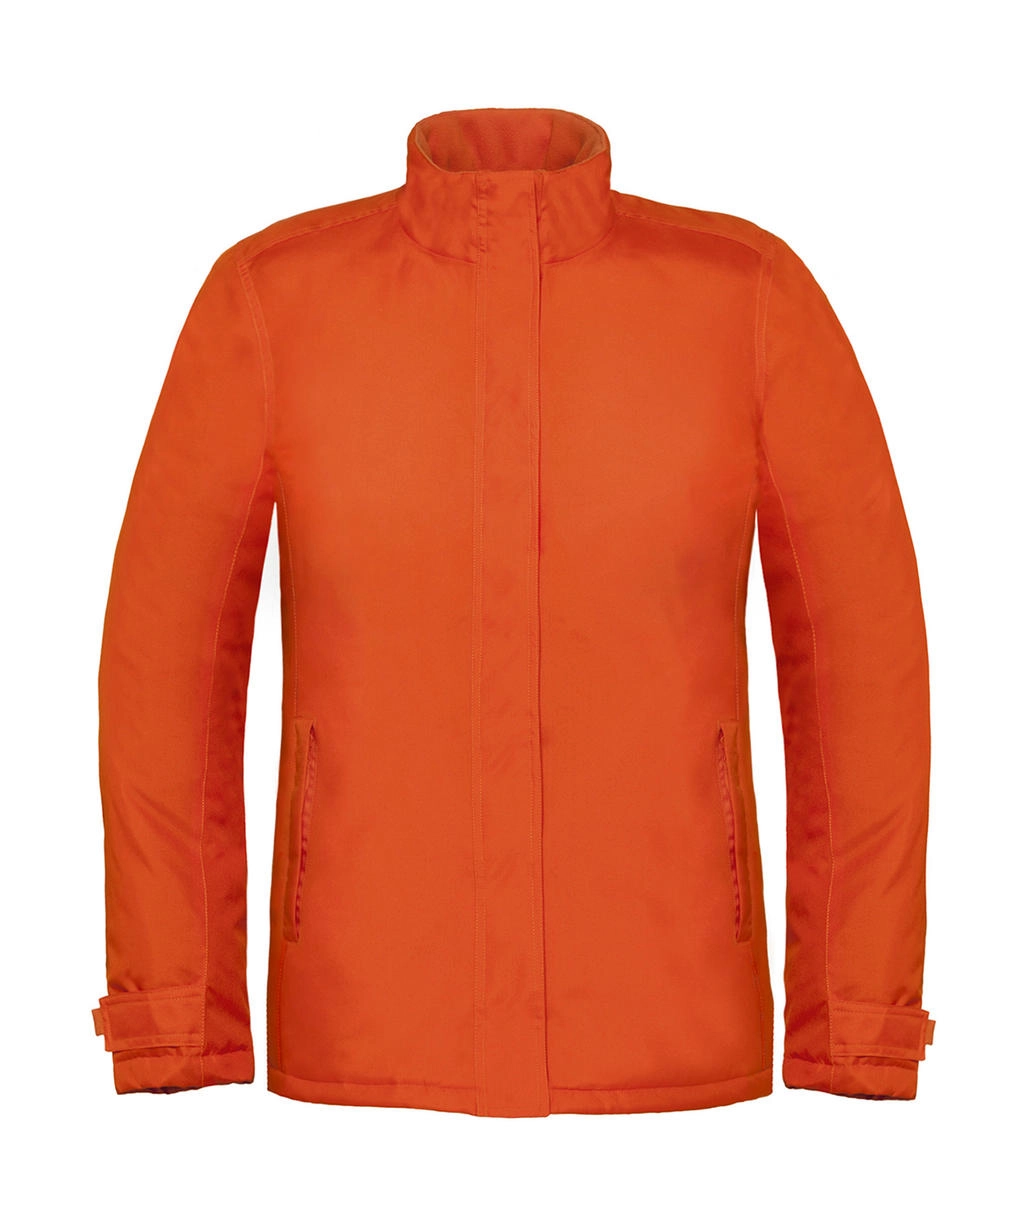 Real+/women Heavy Weight Jacket zum Besticken und Bedrucken in der Farbe Orange mit Ihren Logo, Schriftzug oder Motiv.